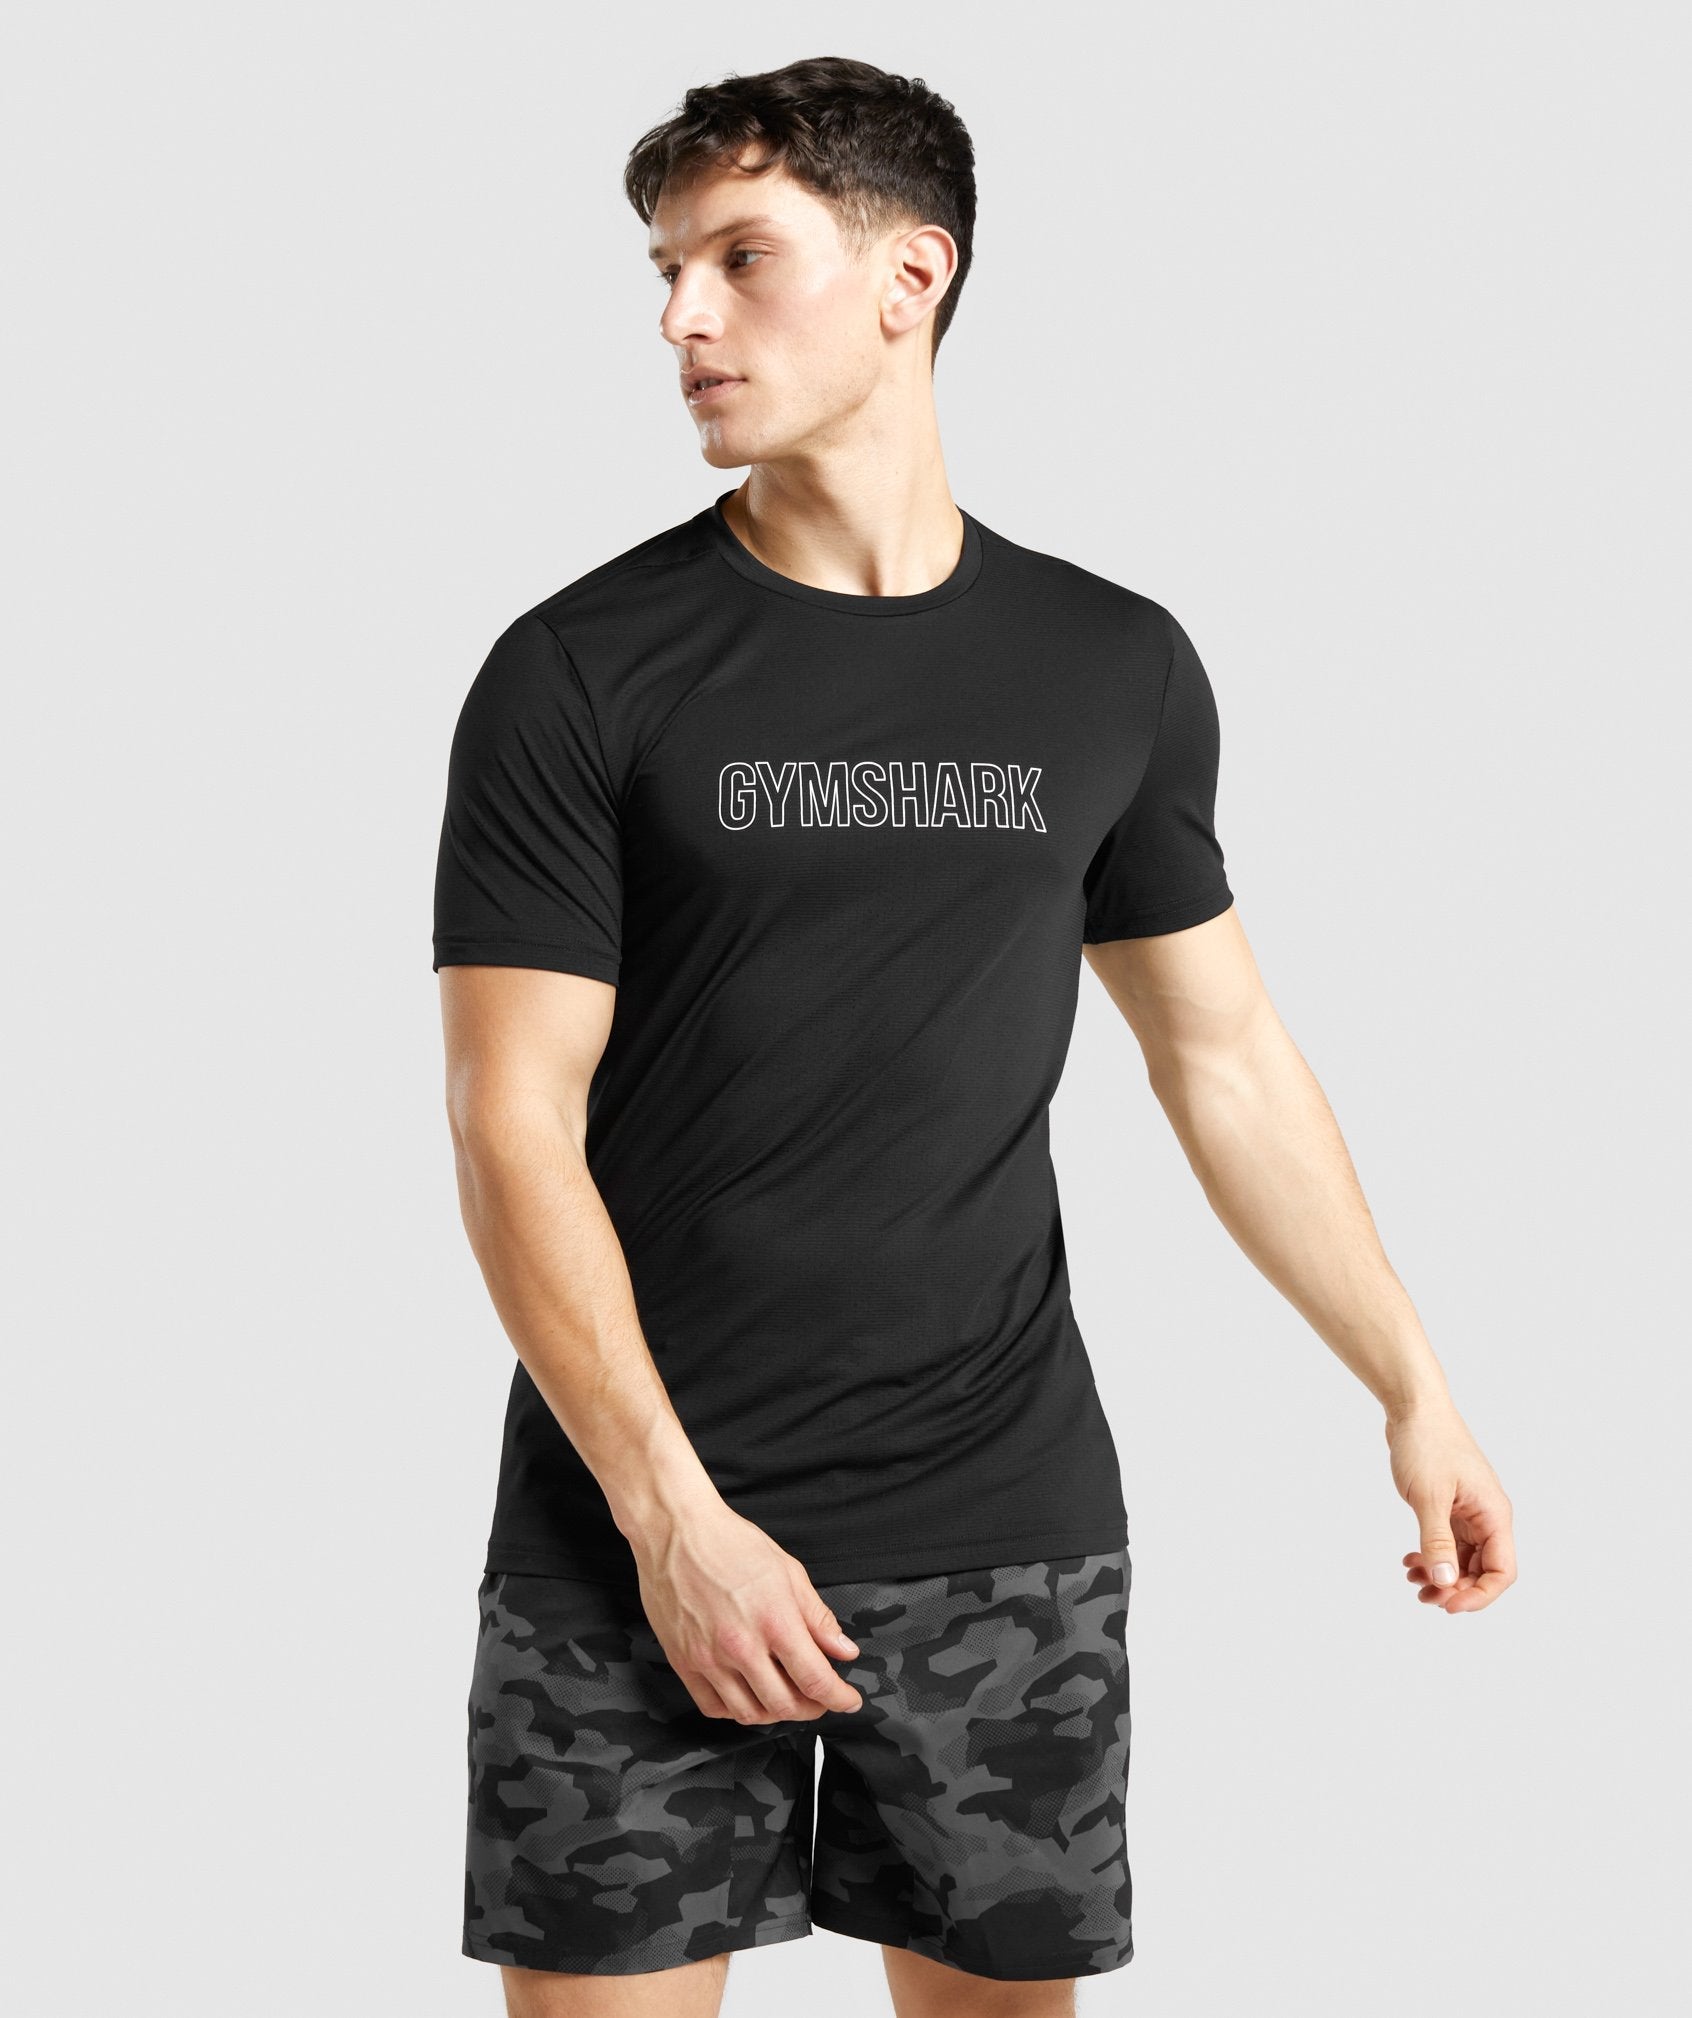 GYMSHARK Arrival Slim Black T-shirt for Men